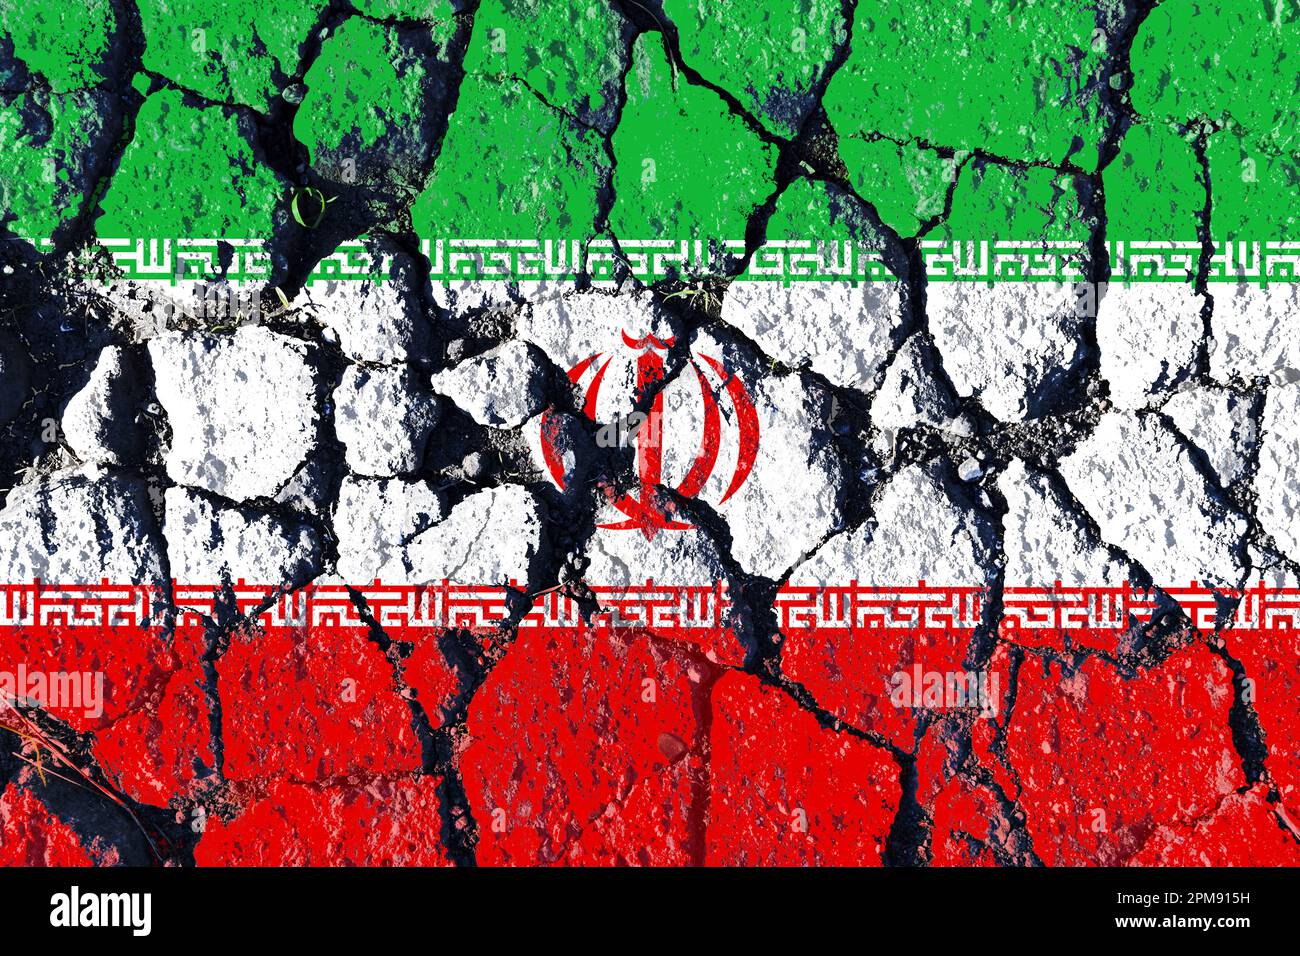 FOTOMONTAGE, Fahne des Iran auf gebrochenem Grund, Symbolfoto für die Proteste im Iran Foto Stock